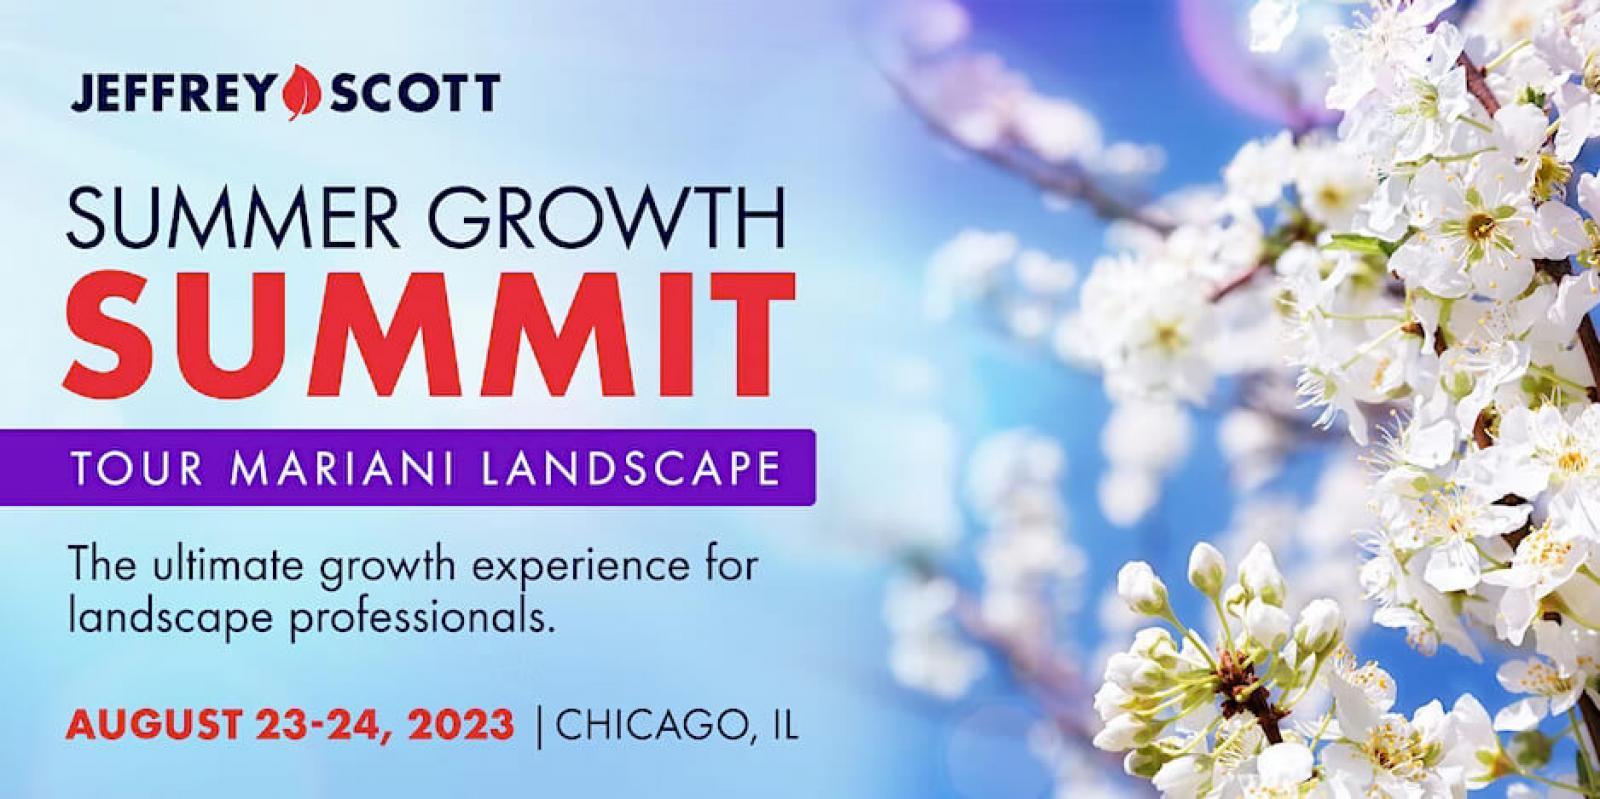 Jeffrey Scott Summer Growth Summit 2023